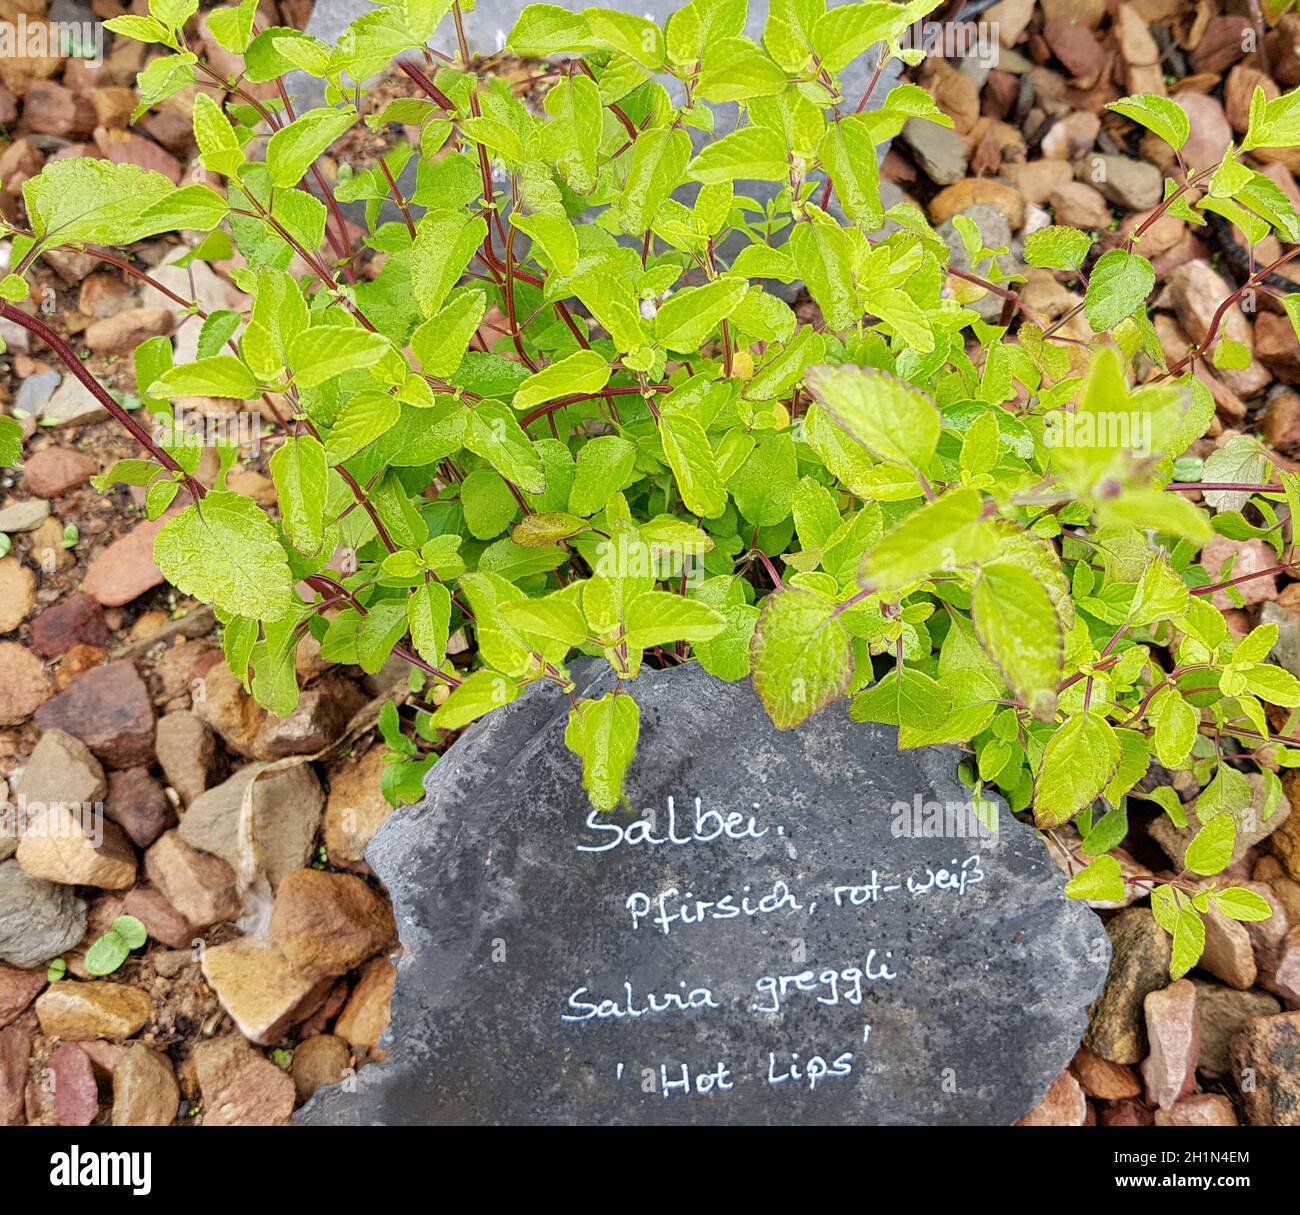 Salbei, Pfirsich-, Salvia greggli, Hot Lips, ist eine wichtige Heilpflanze und eine Duftpflanze mit blauen Blauen. You are a schoen staude and wi Stockfoto